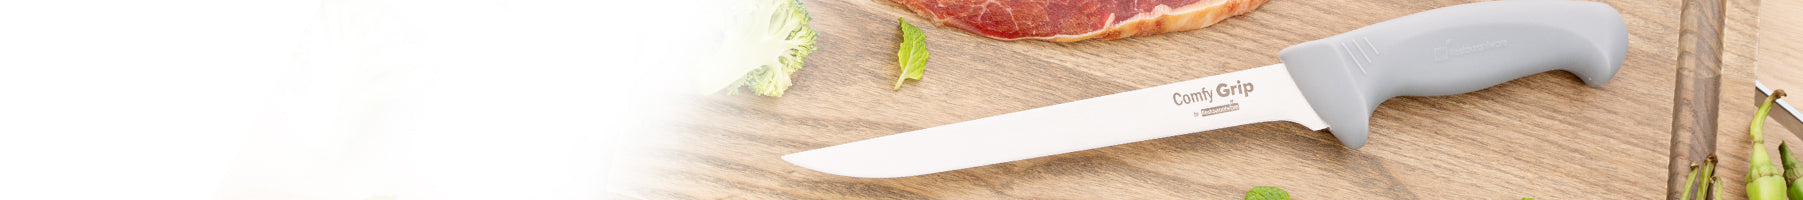 Banner_Smallwares_Kitchen-Knives-Cutlery_Boning-Knives_242